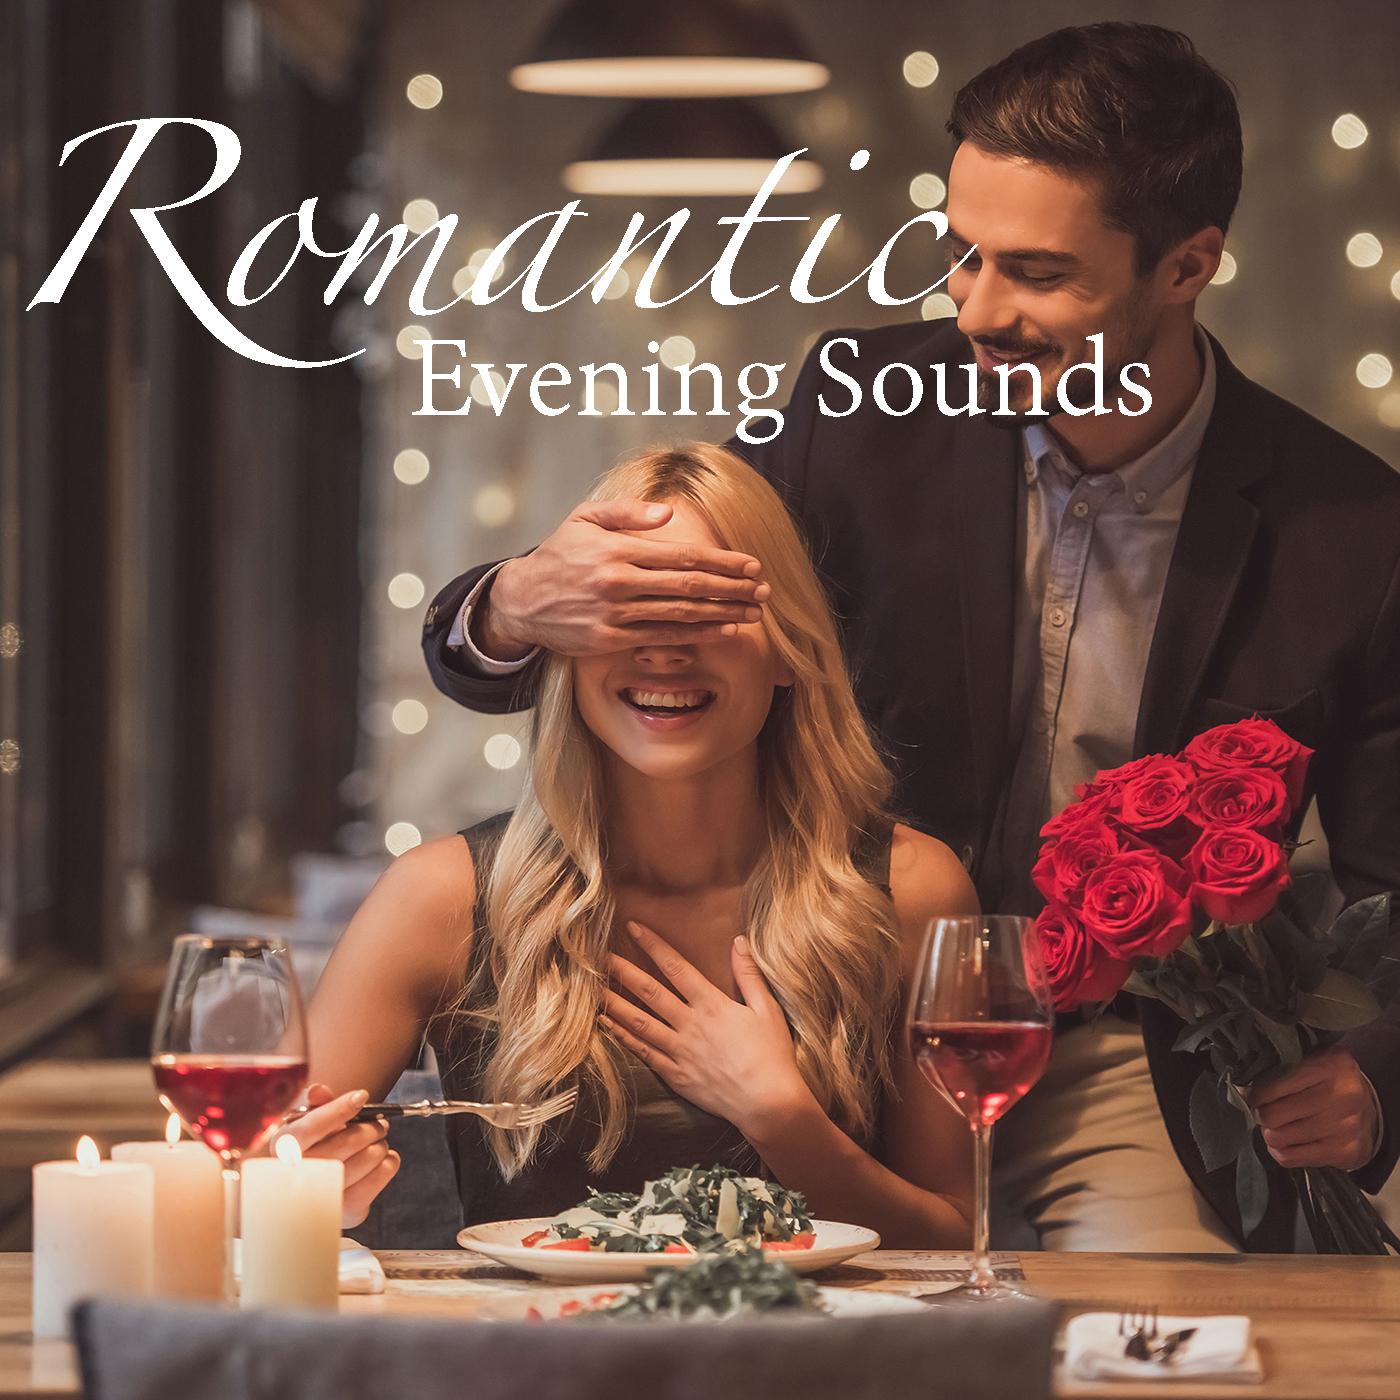 Romantic Evening Sounds